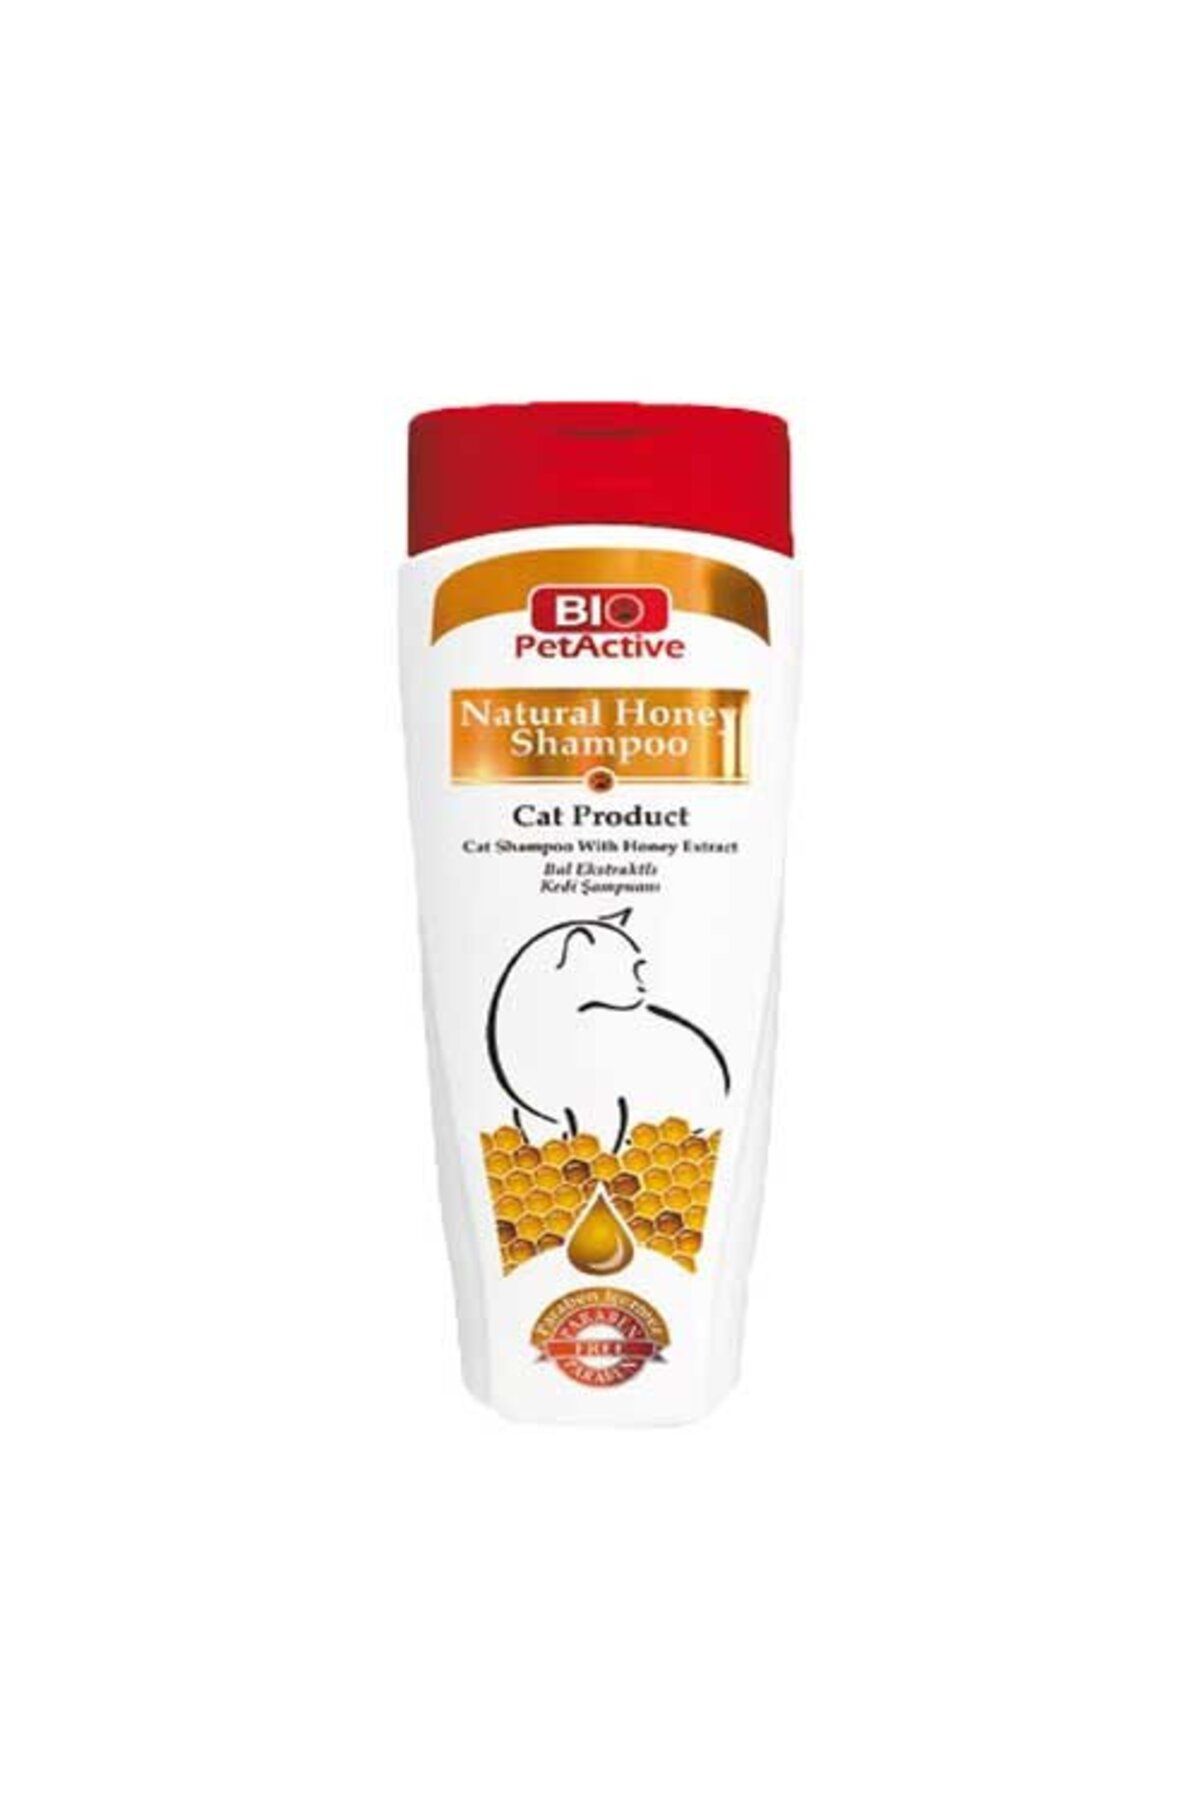 Bio PetActive Biopetactive Naturel Honey Ballı Kedi Şampuanı 400 ml